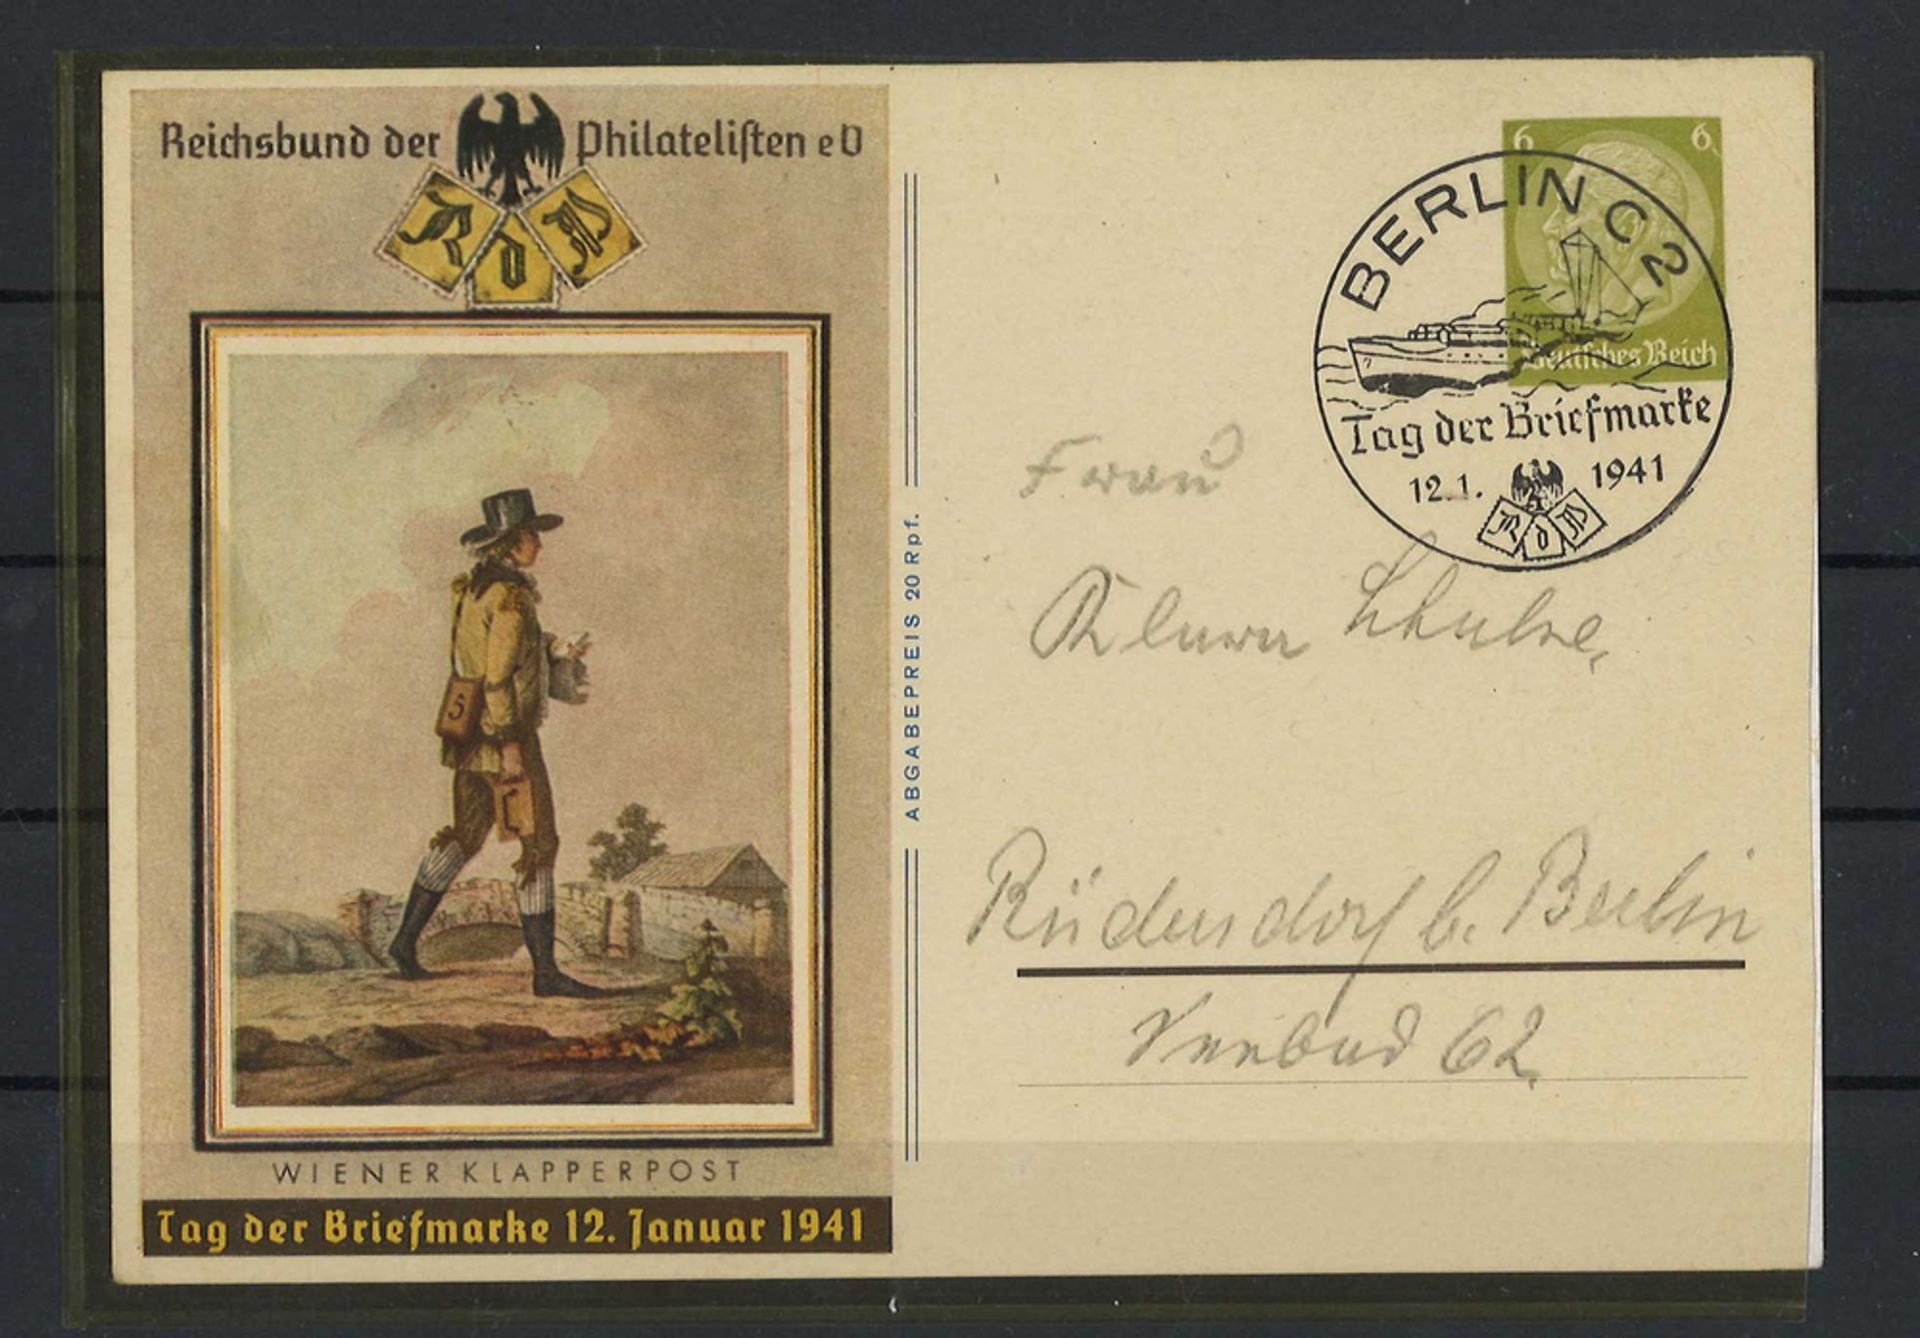 Reichsbund der Philatelisten eV "Wiener Klapperpost" Tag der Briefmarke 12. Januar 1941